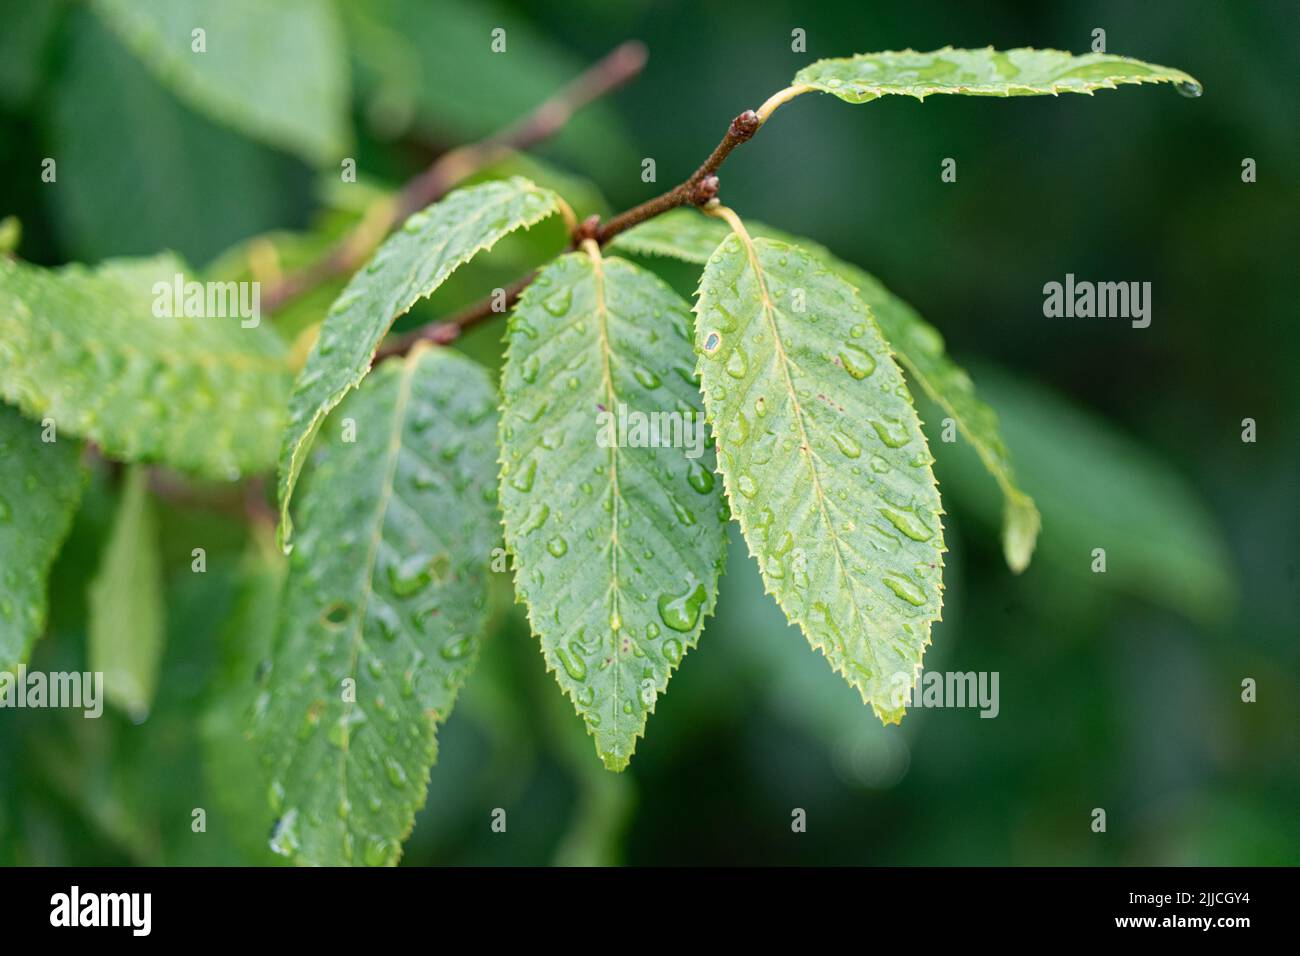 Dopo la pioggia doccia: Gocce d'acqua che si siedono su foglie verdi Foto Stock